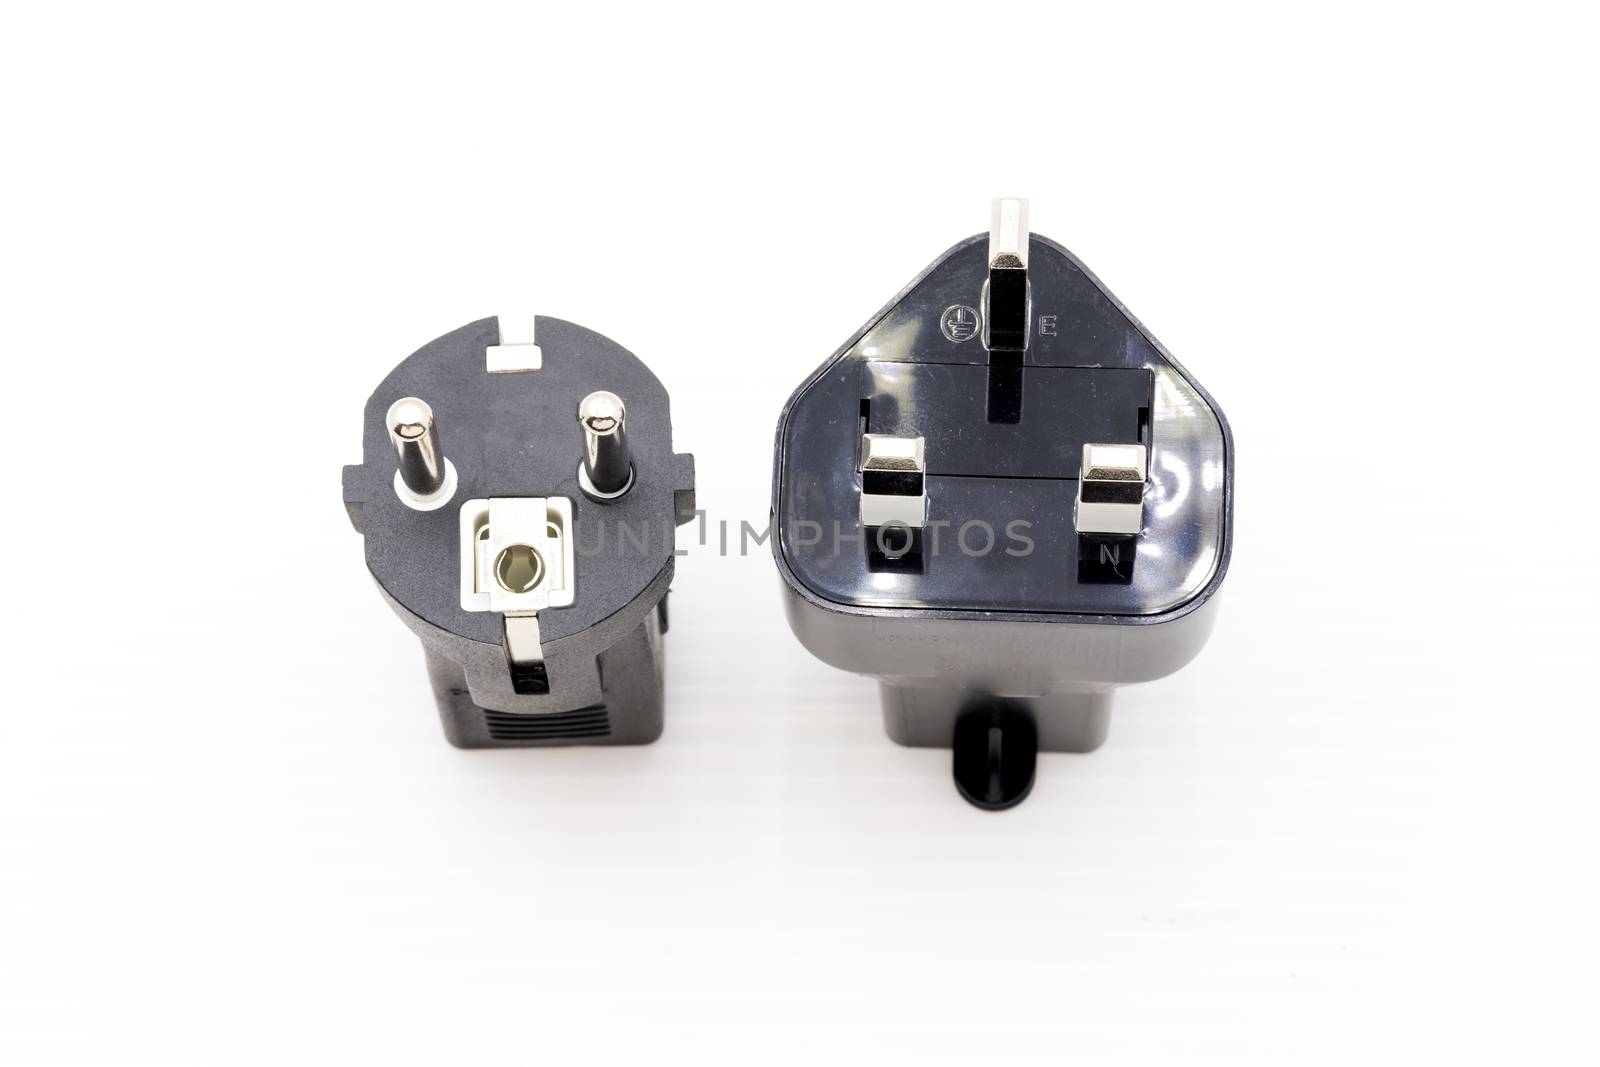 Adapter socket  electrical plug. by nikonlike